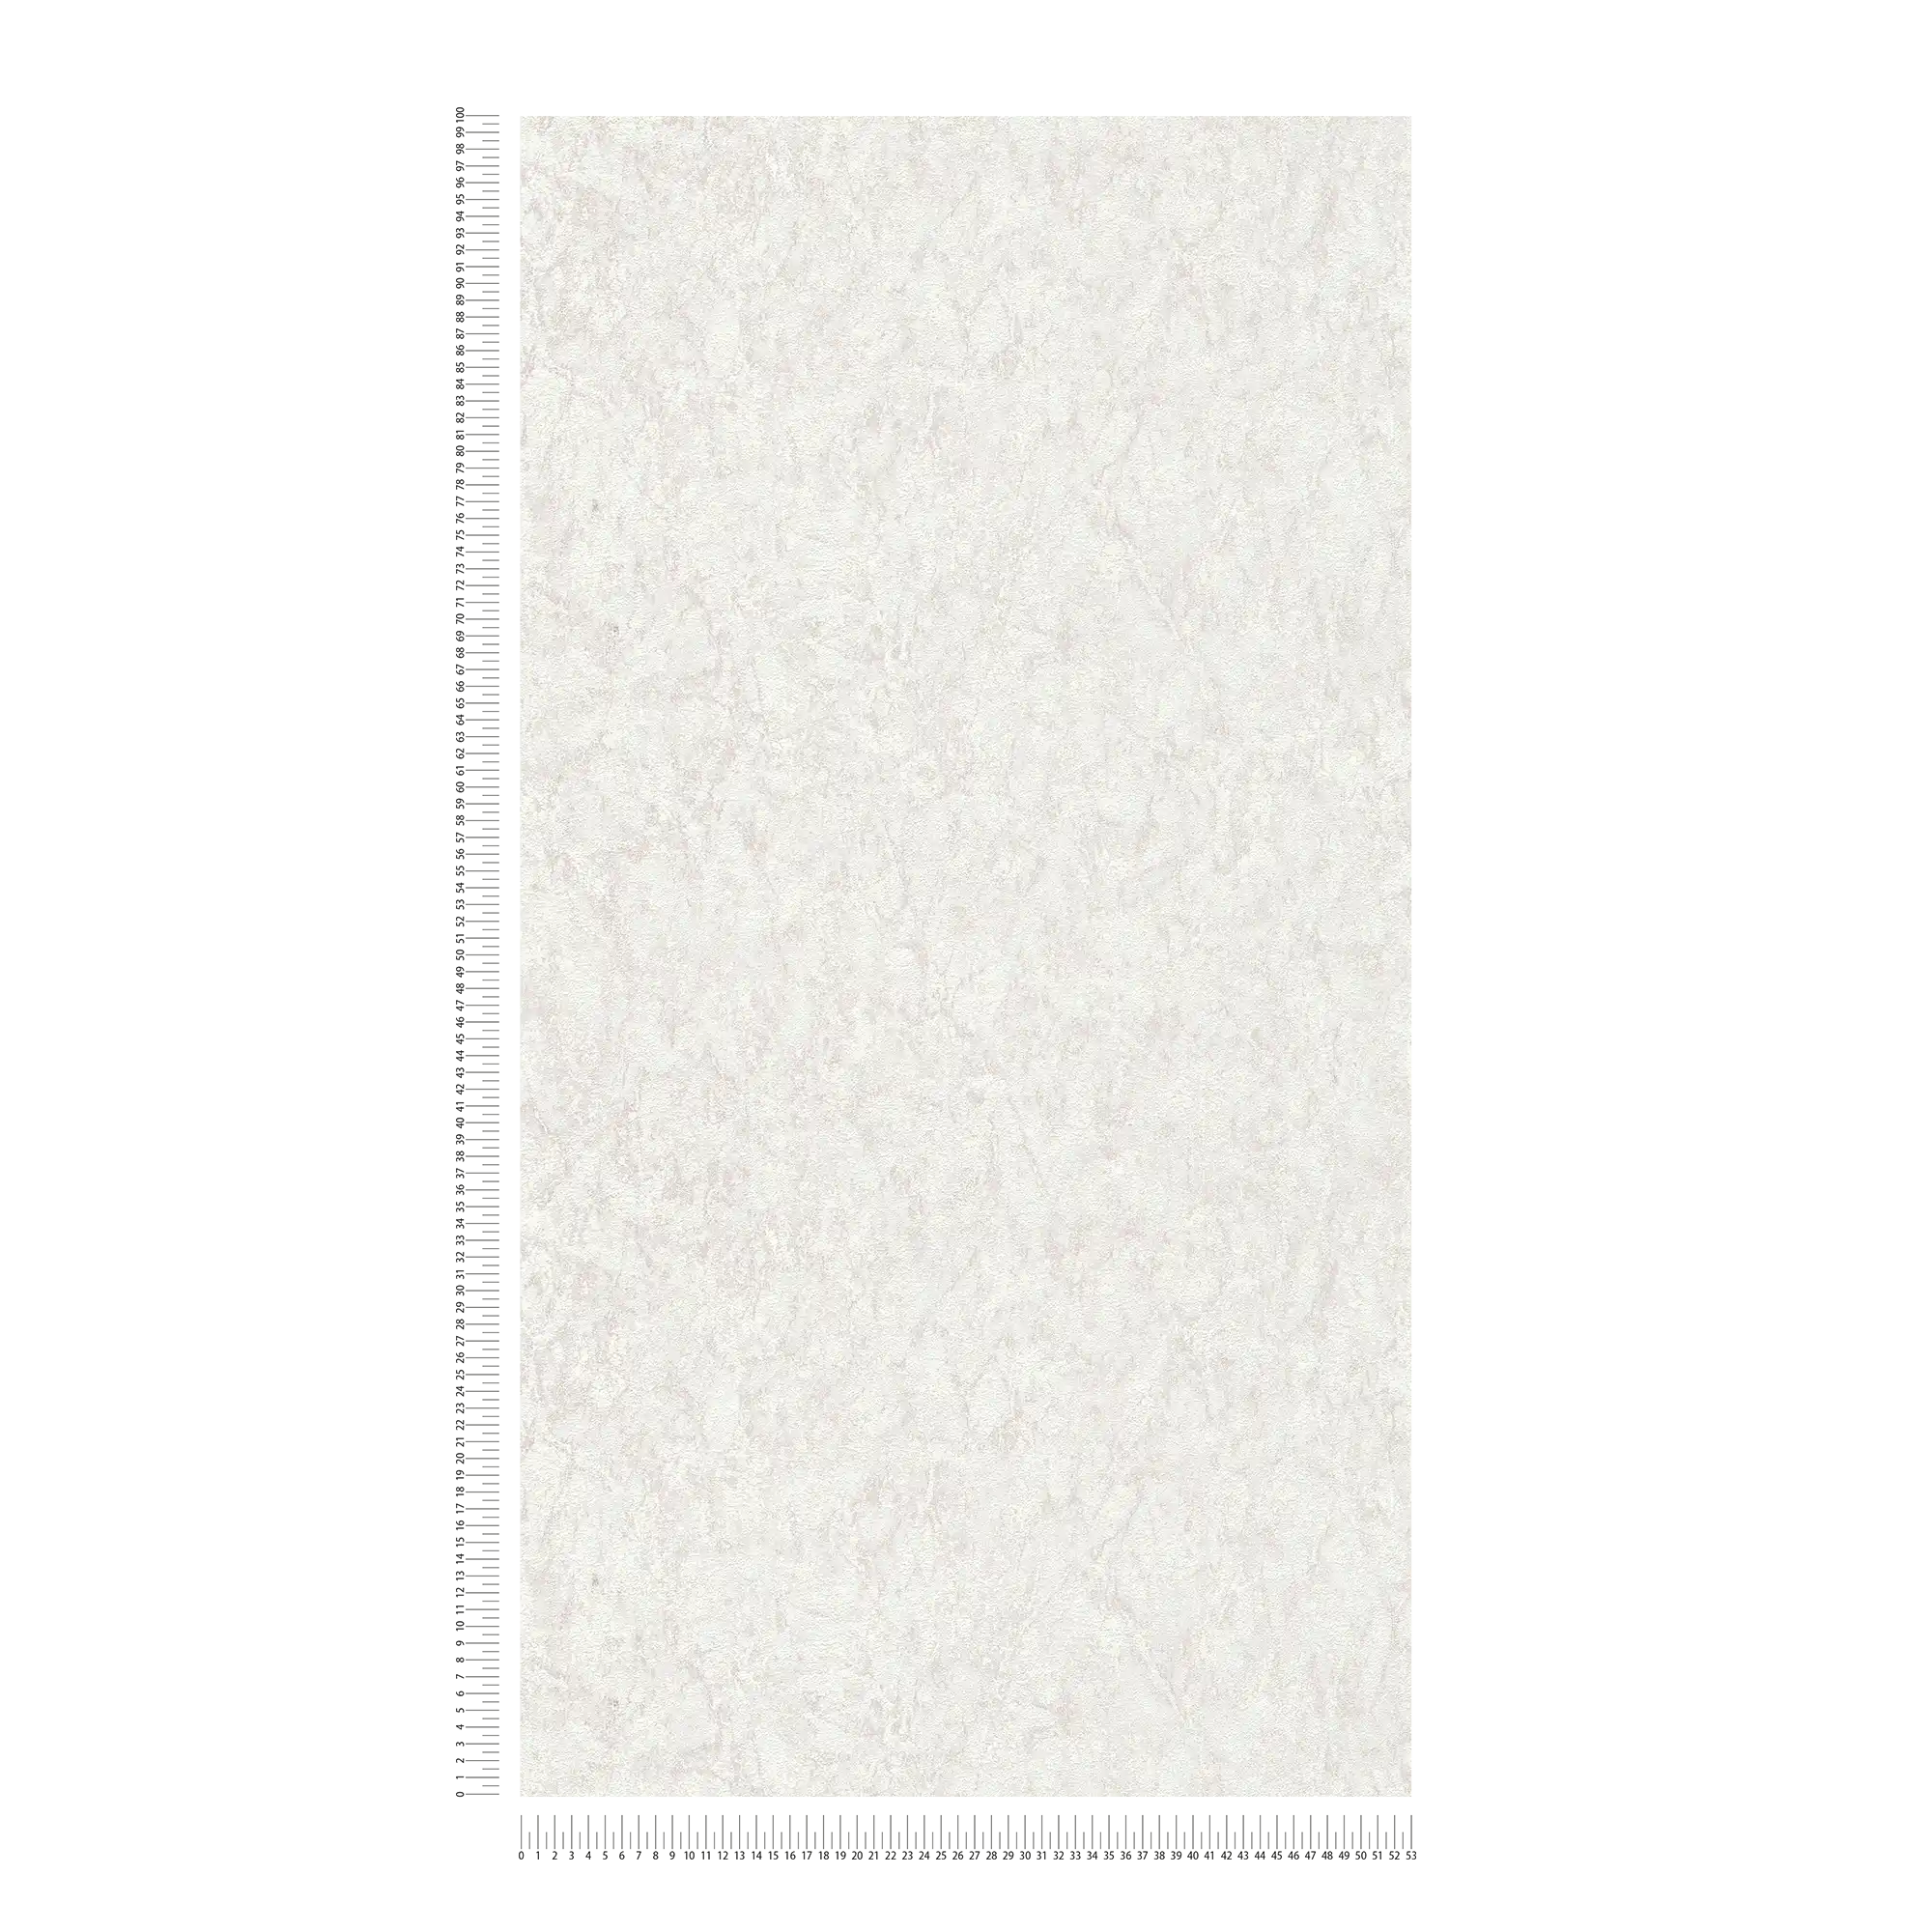             Papel pintado unitario con efecto texturizado y diseño moteado - gris, beige, crema
        